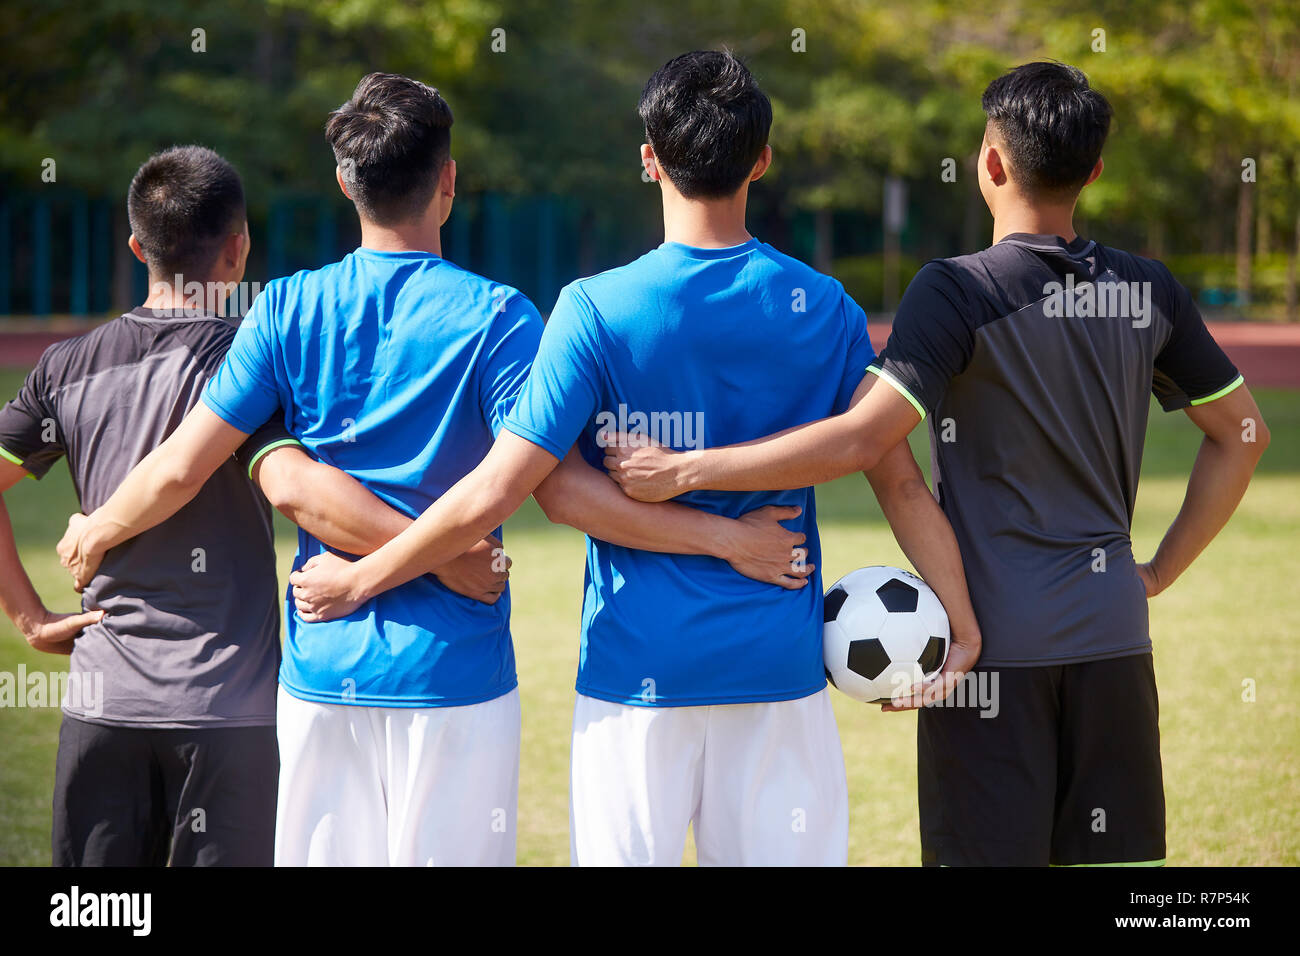 Portrait en extérieur d'une équipe de jeunes joueurs de football football asiatique, vue arrière Banque D'Images